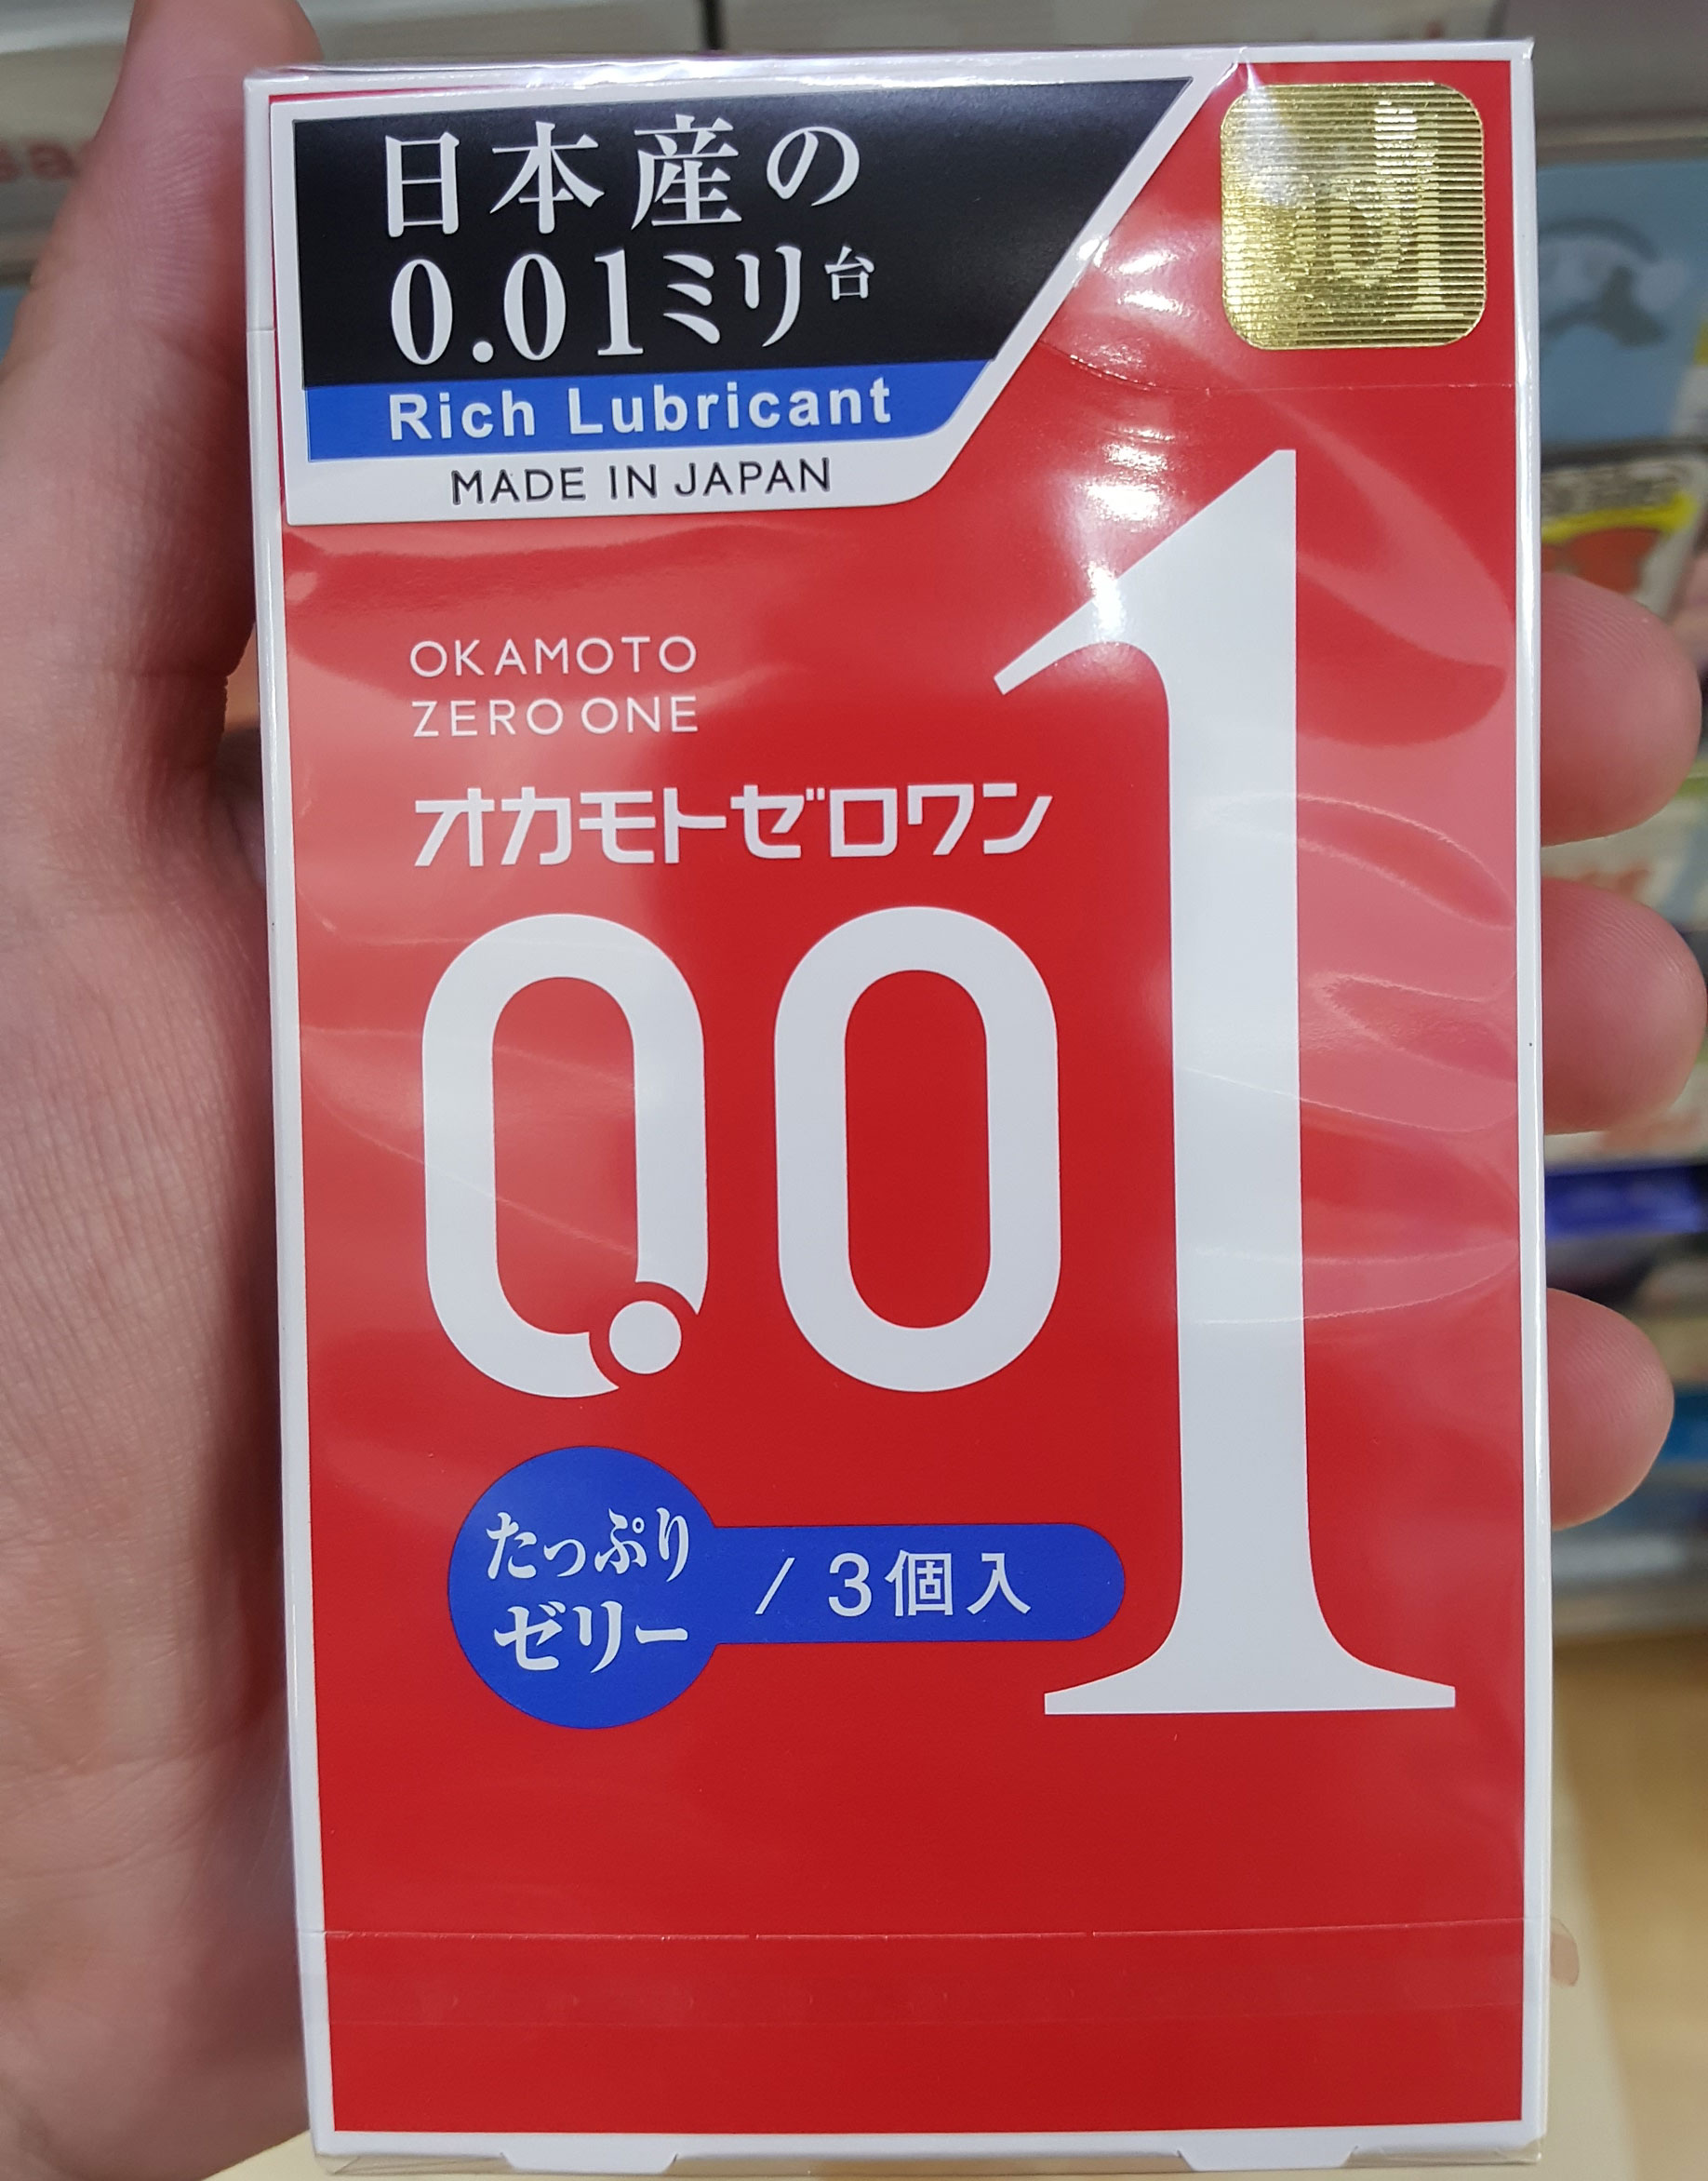 Japanische Kondome sind aus Polyurethan statt Latex. Deshalb ist es möglich, dass sie nur 0,01 mm dick sind.